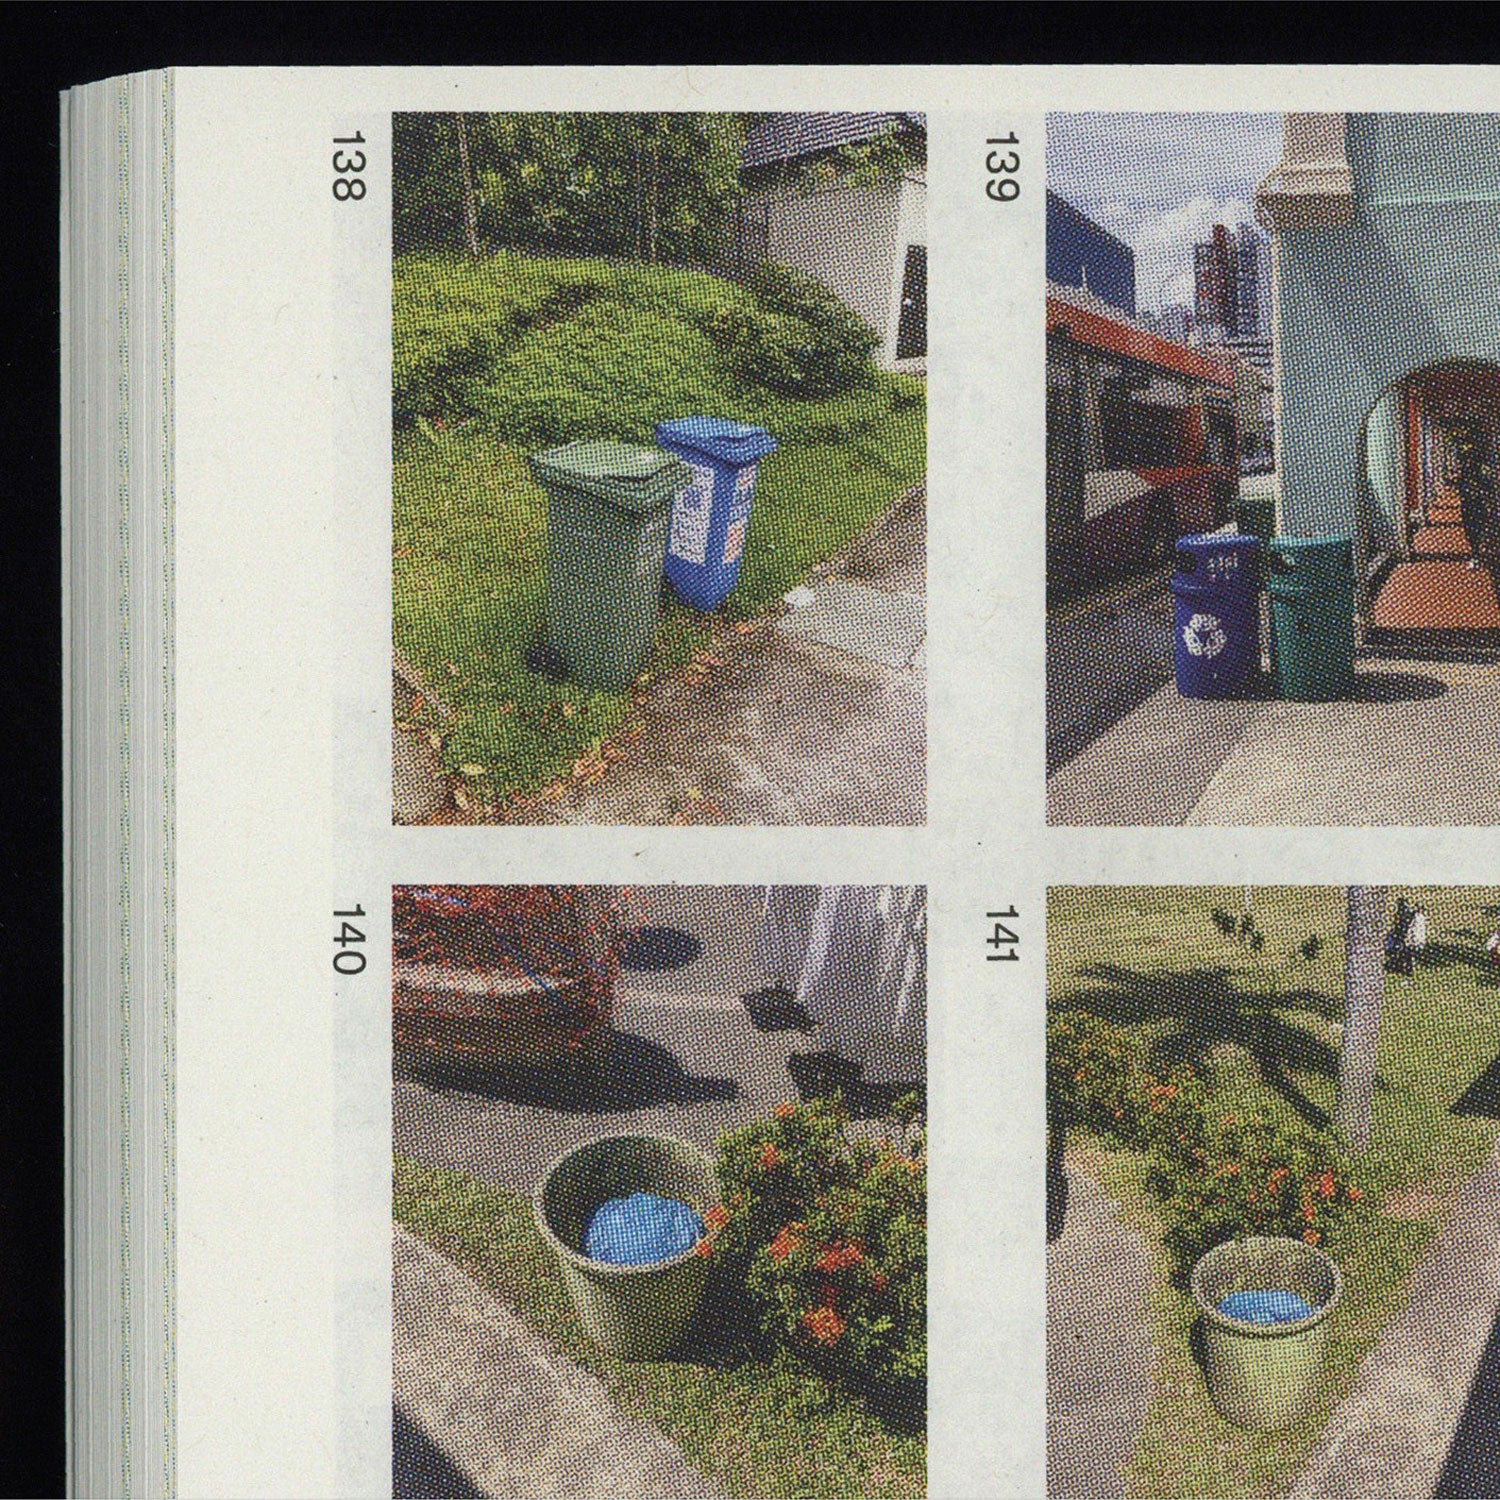 ストリートレポート No.1 公共ゴミ箱